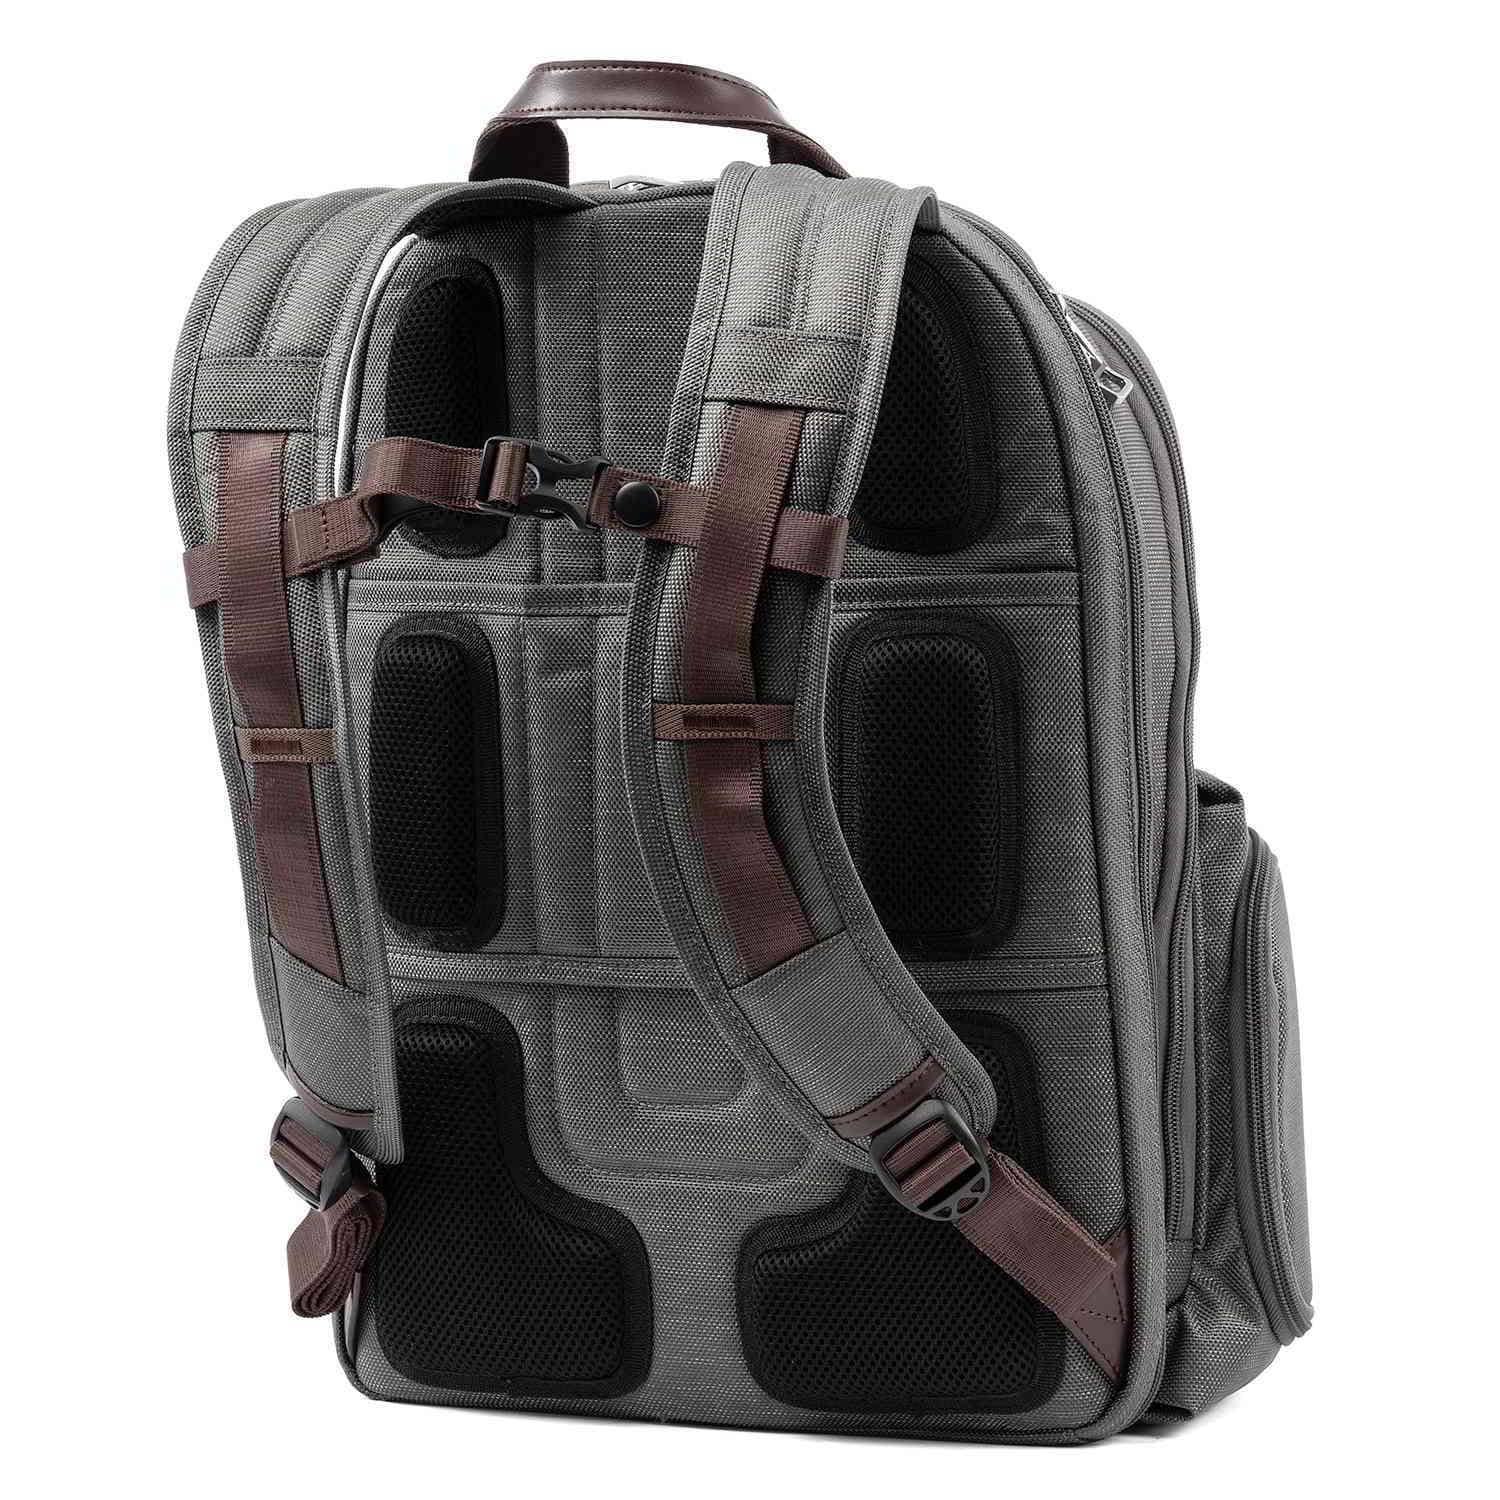 Travelpro Platinum Elite Business Backpack, Vintage Grey